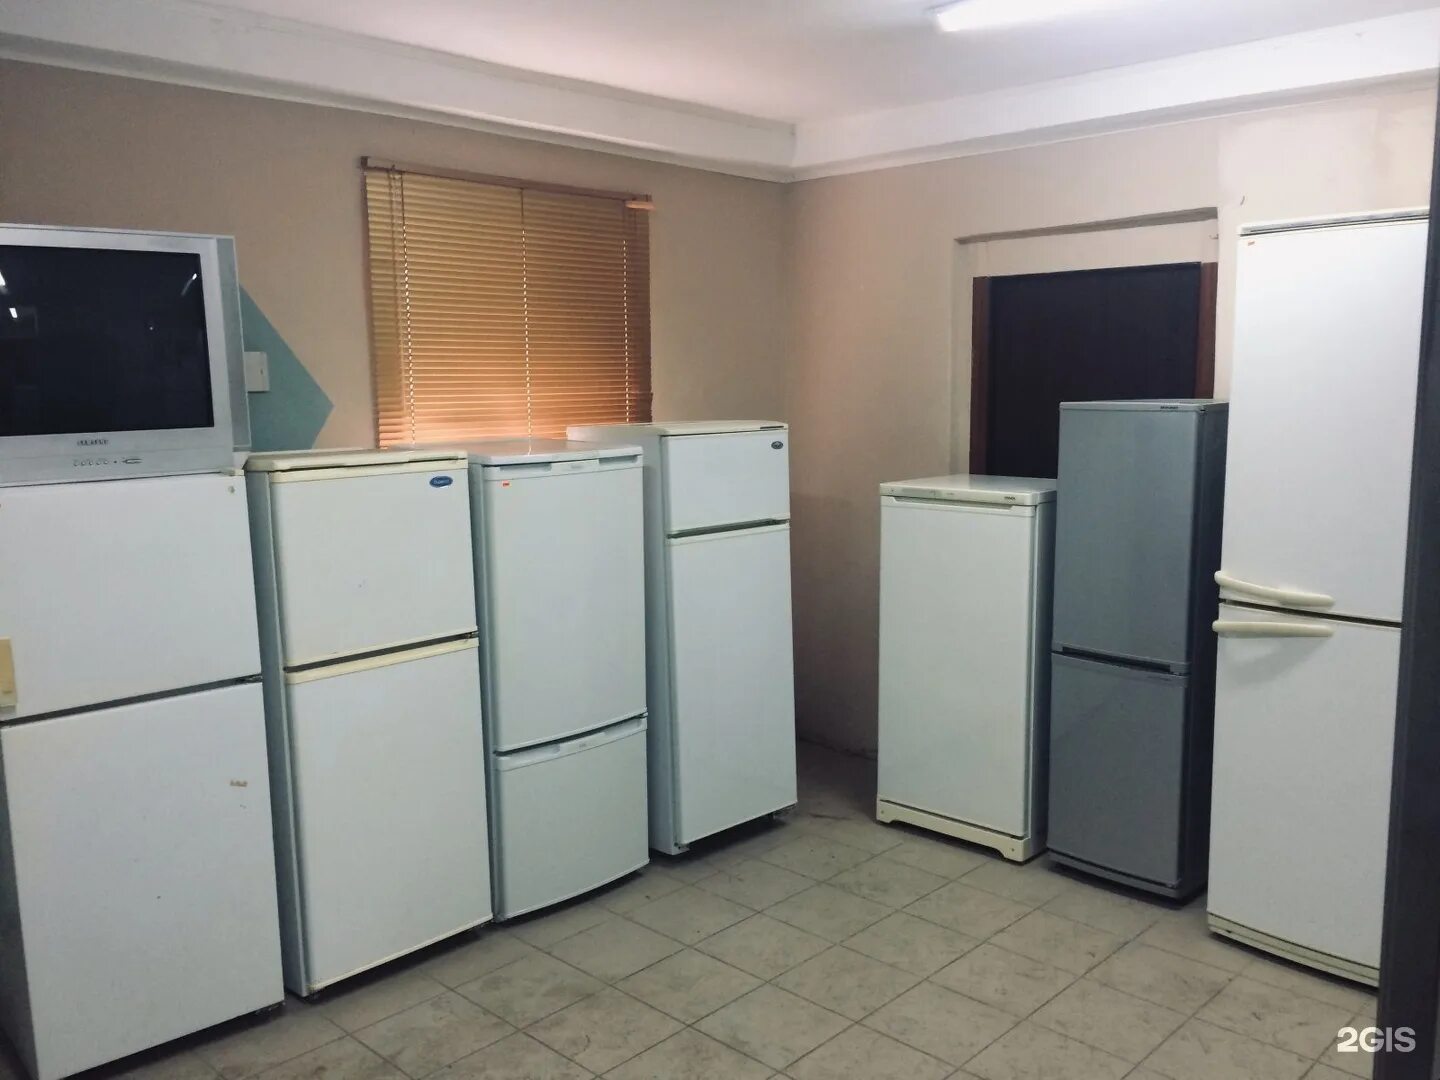 Холодильник б/у. Много холодильников б/у. Холодильник в Алматы. Купить холодильник бу на Отрадном. Авито бытовые б у холодильники